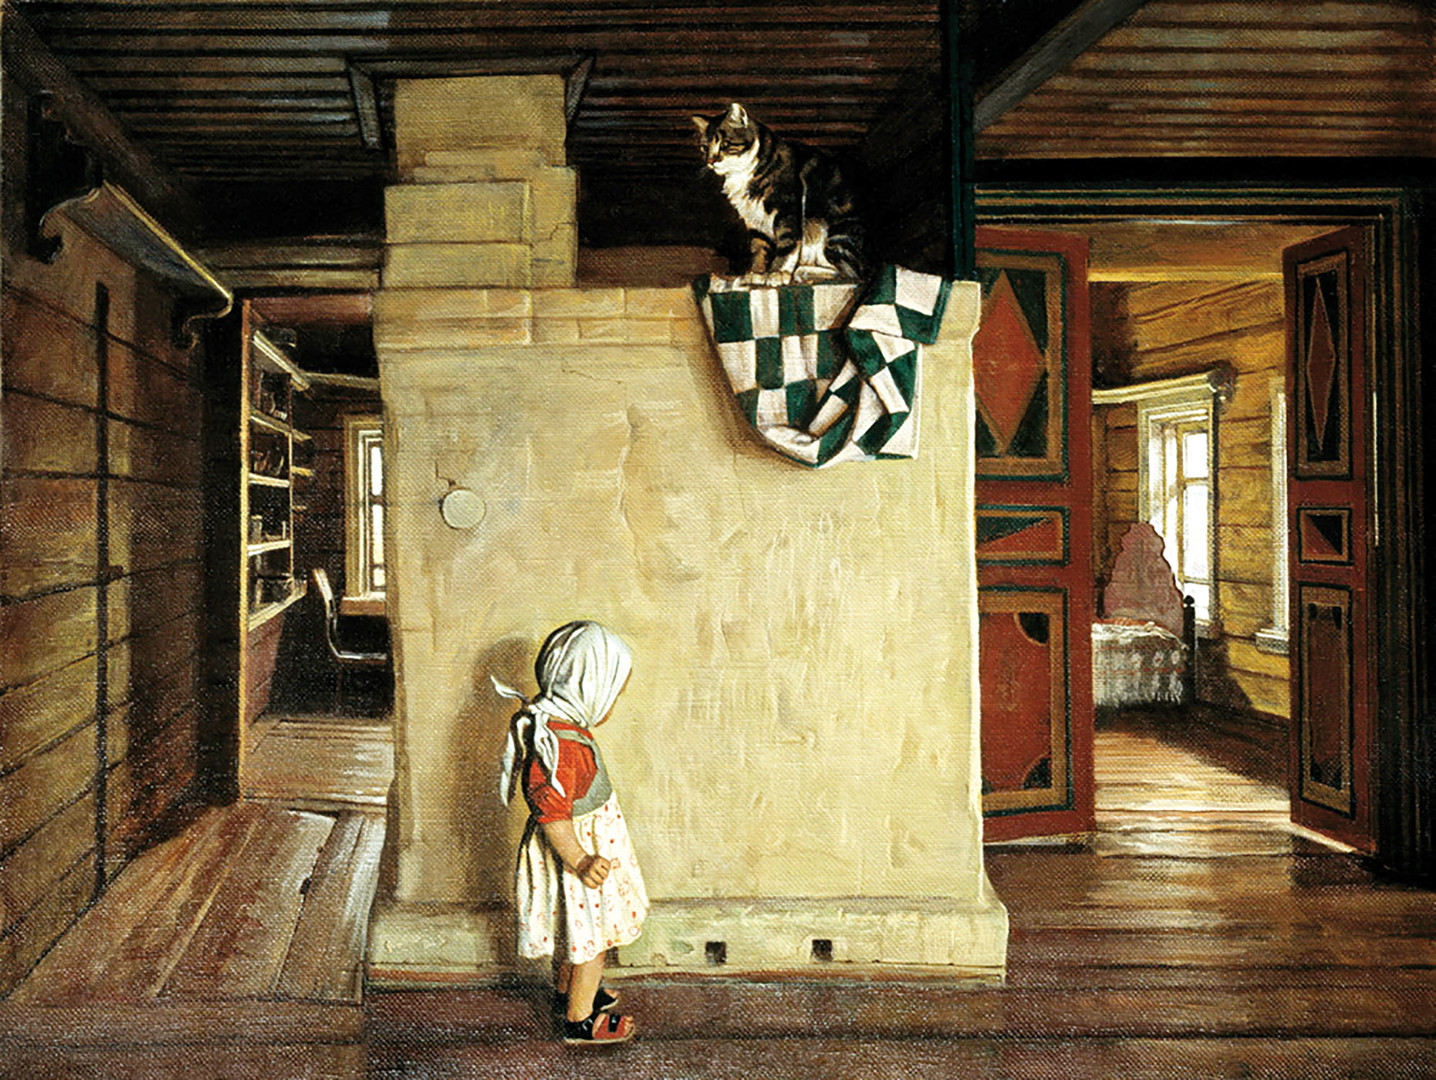 「ラキーティン家族の古い家」、ニコライ・アノーヒン画、1998年